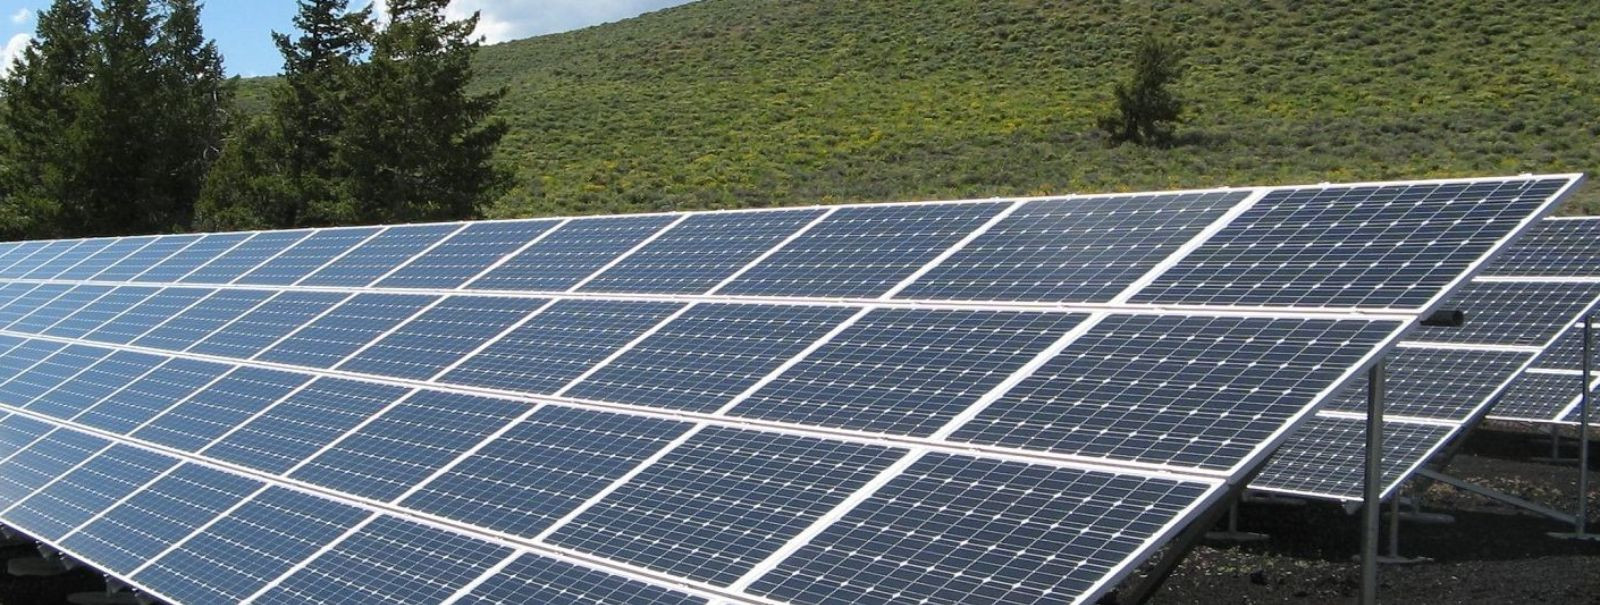 Meie ettevõte, Taastuvenergia pakub parimat päikesepaneelide ...